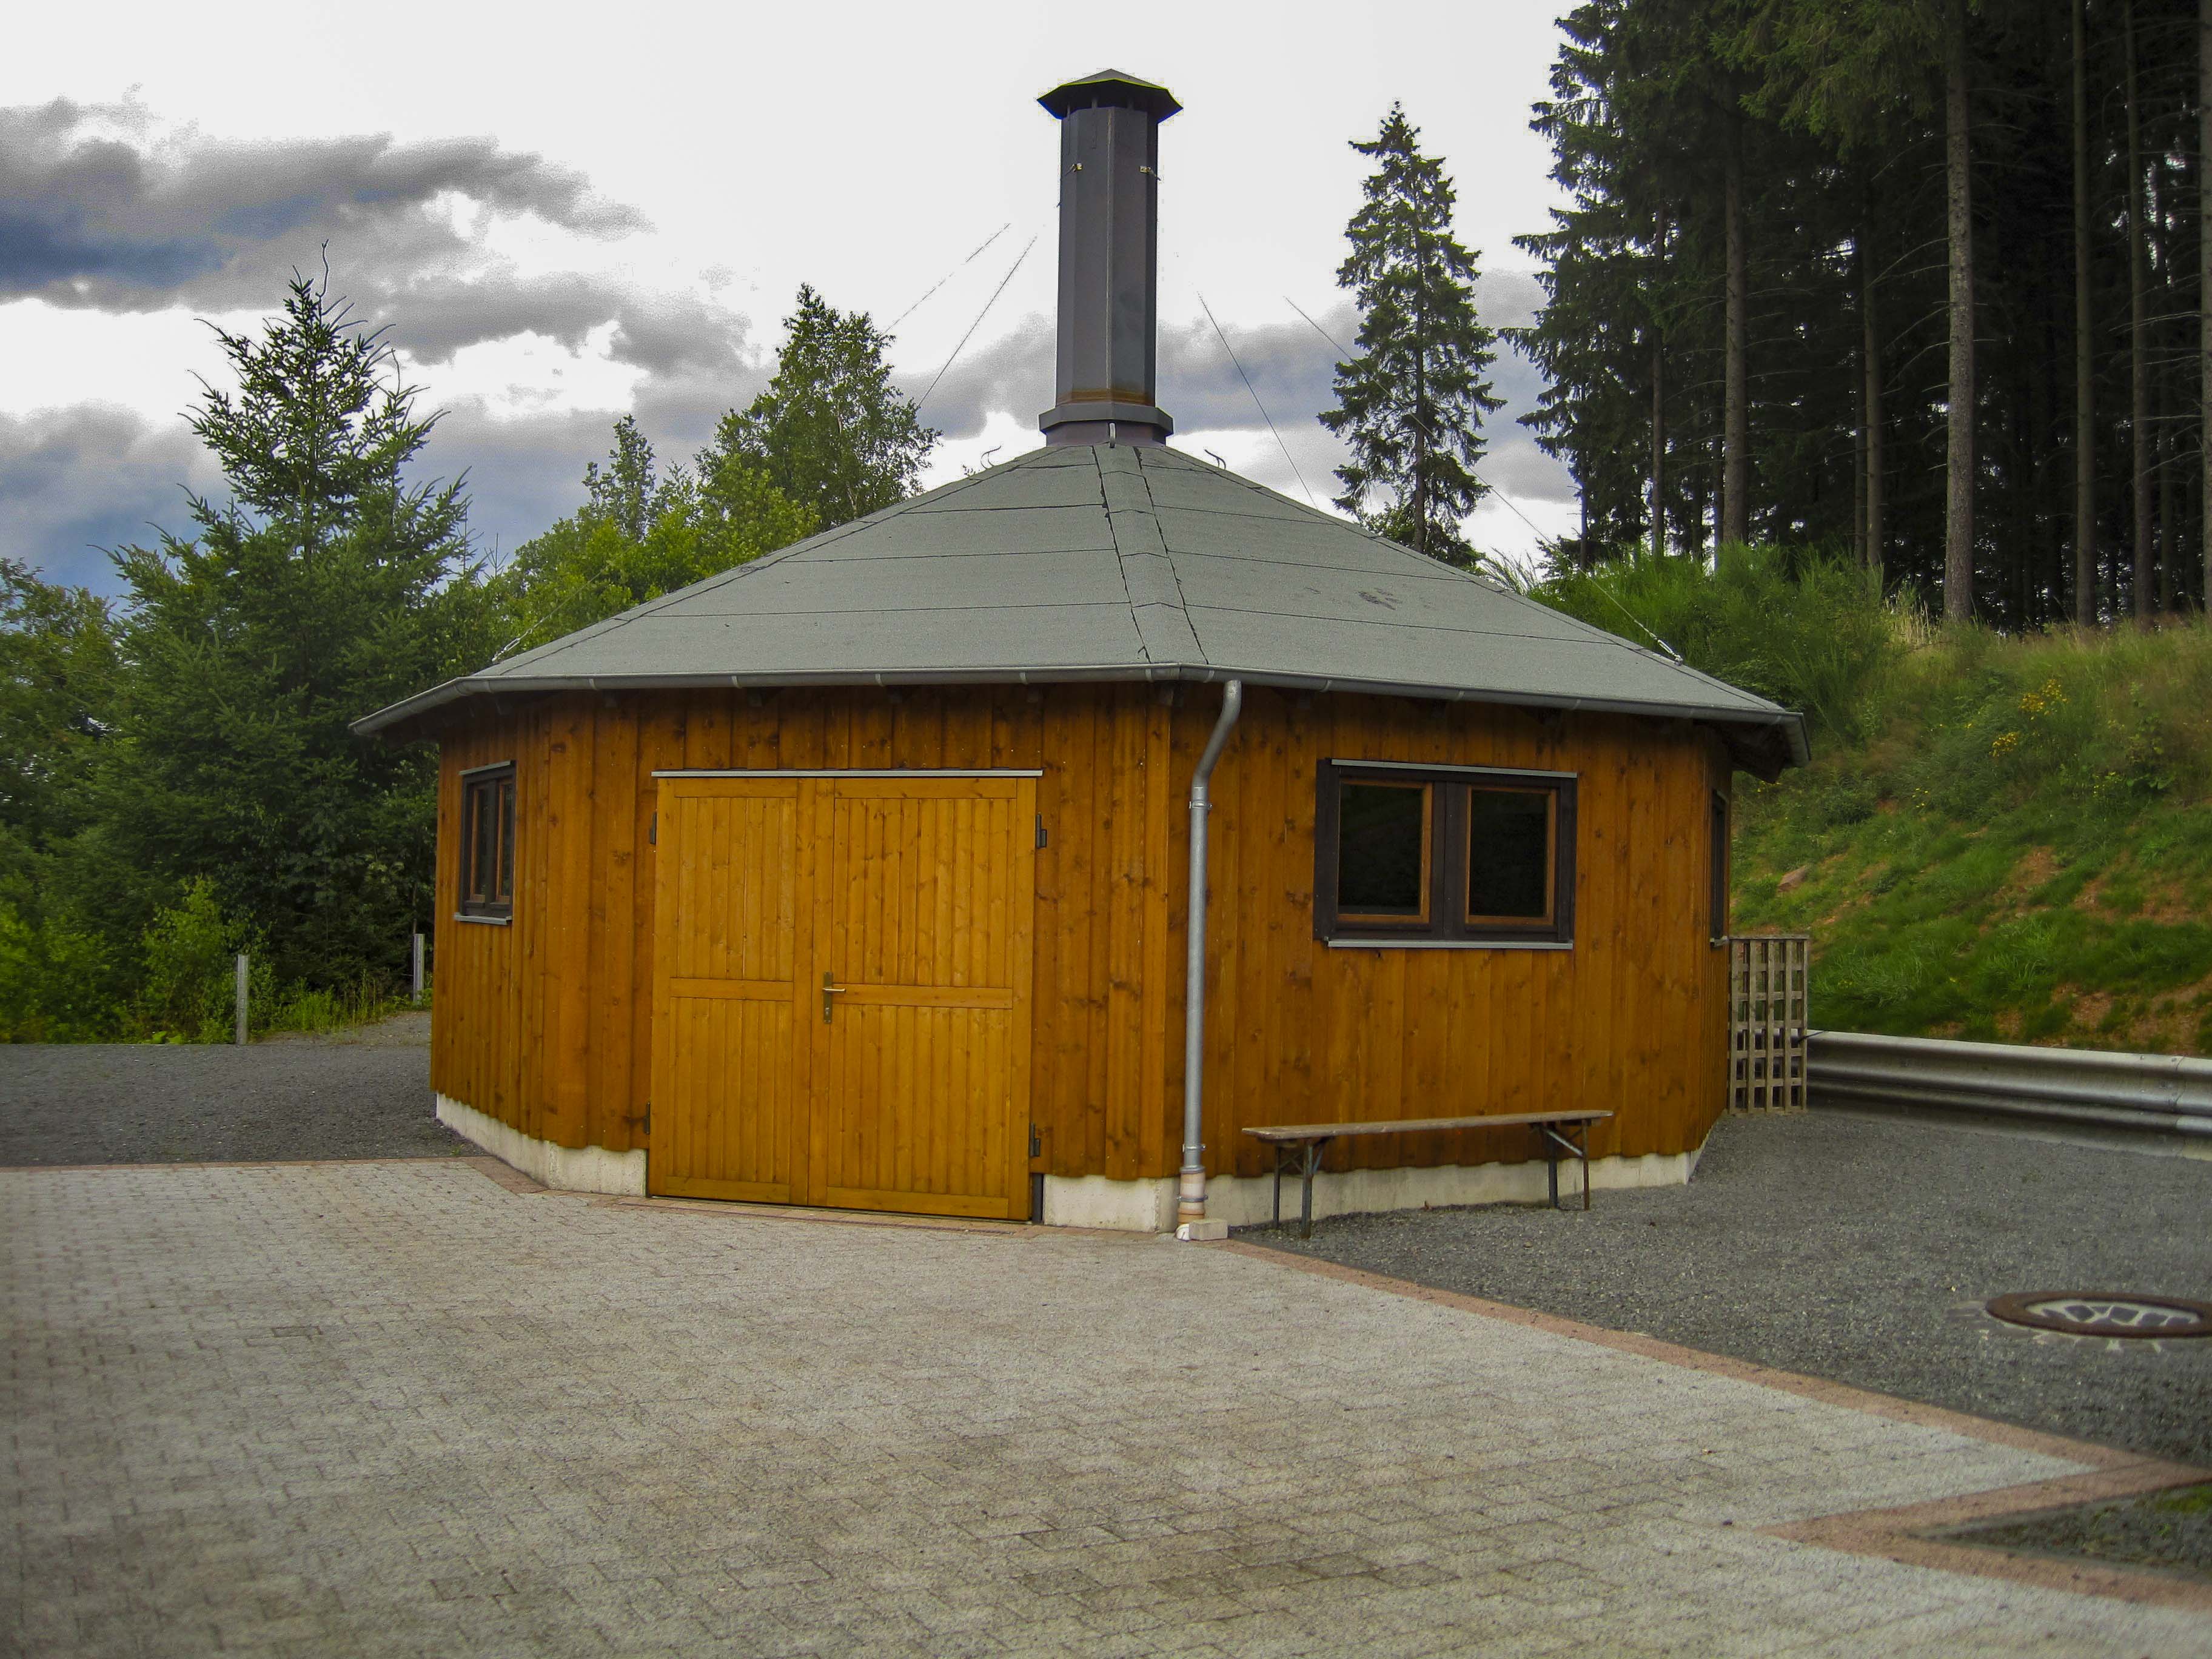 Grillhütte Neroth, 31. Juli 2012